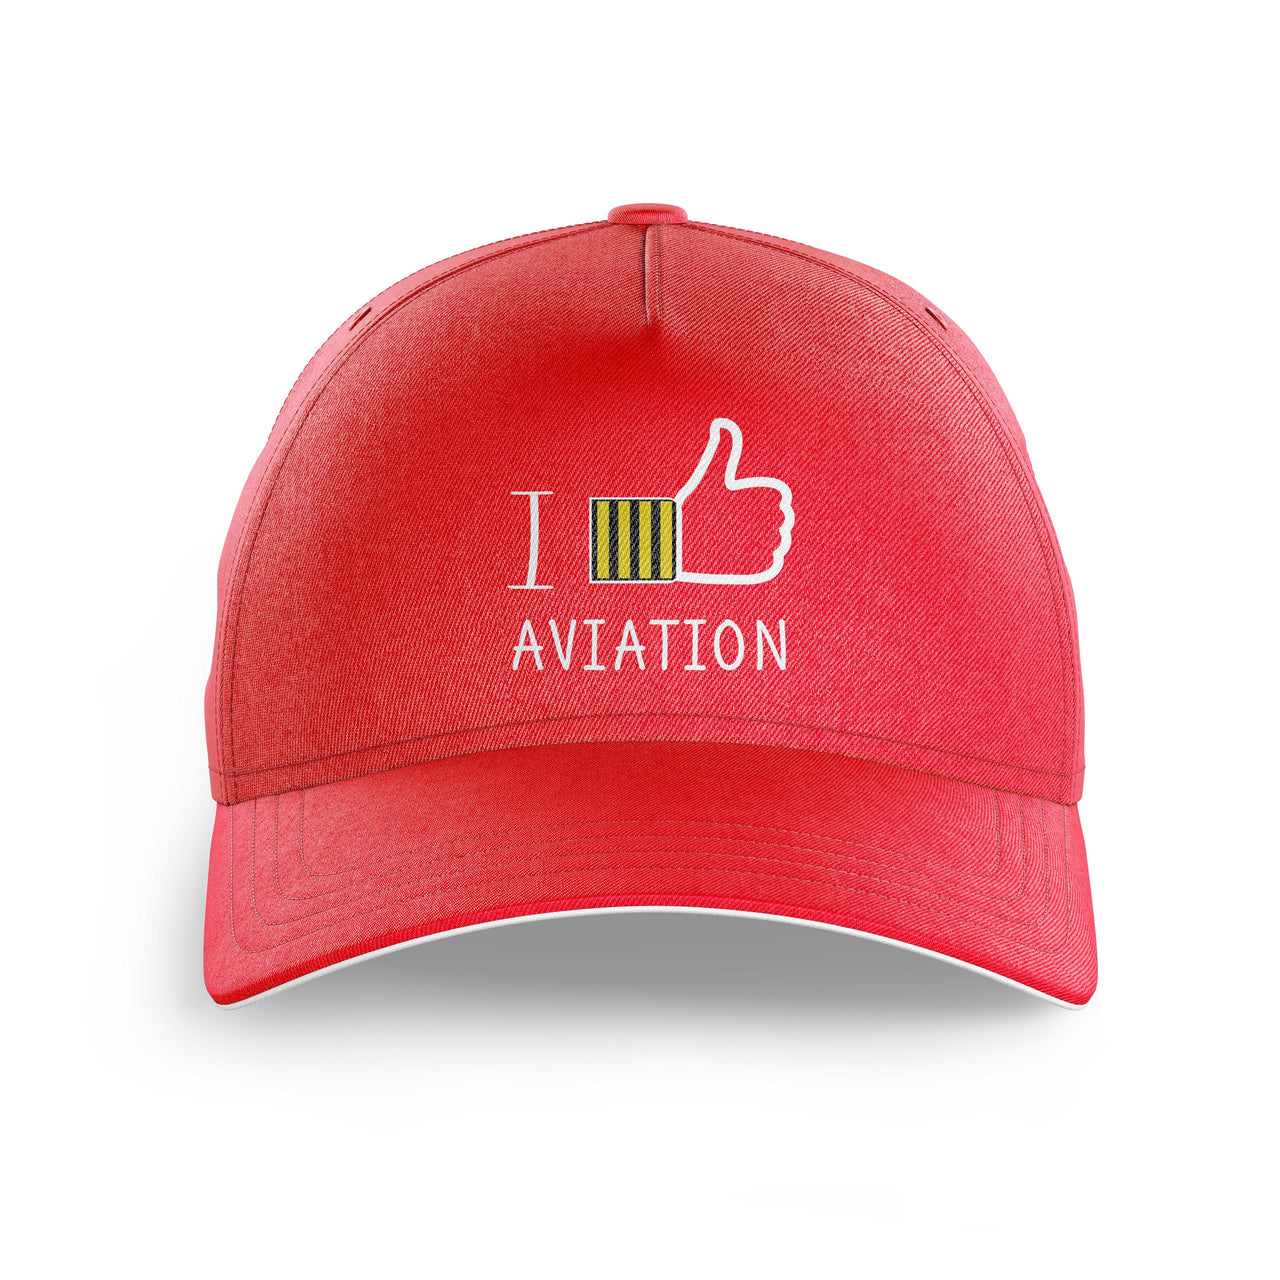 I Like Aviation Printed Hats